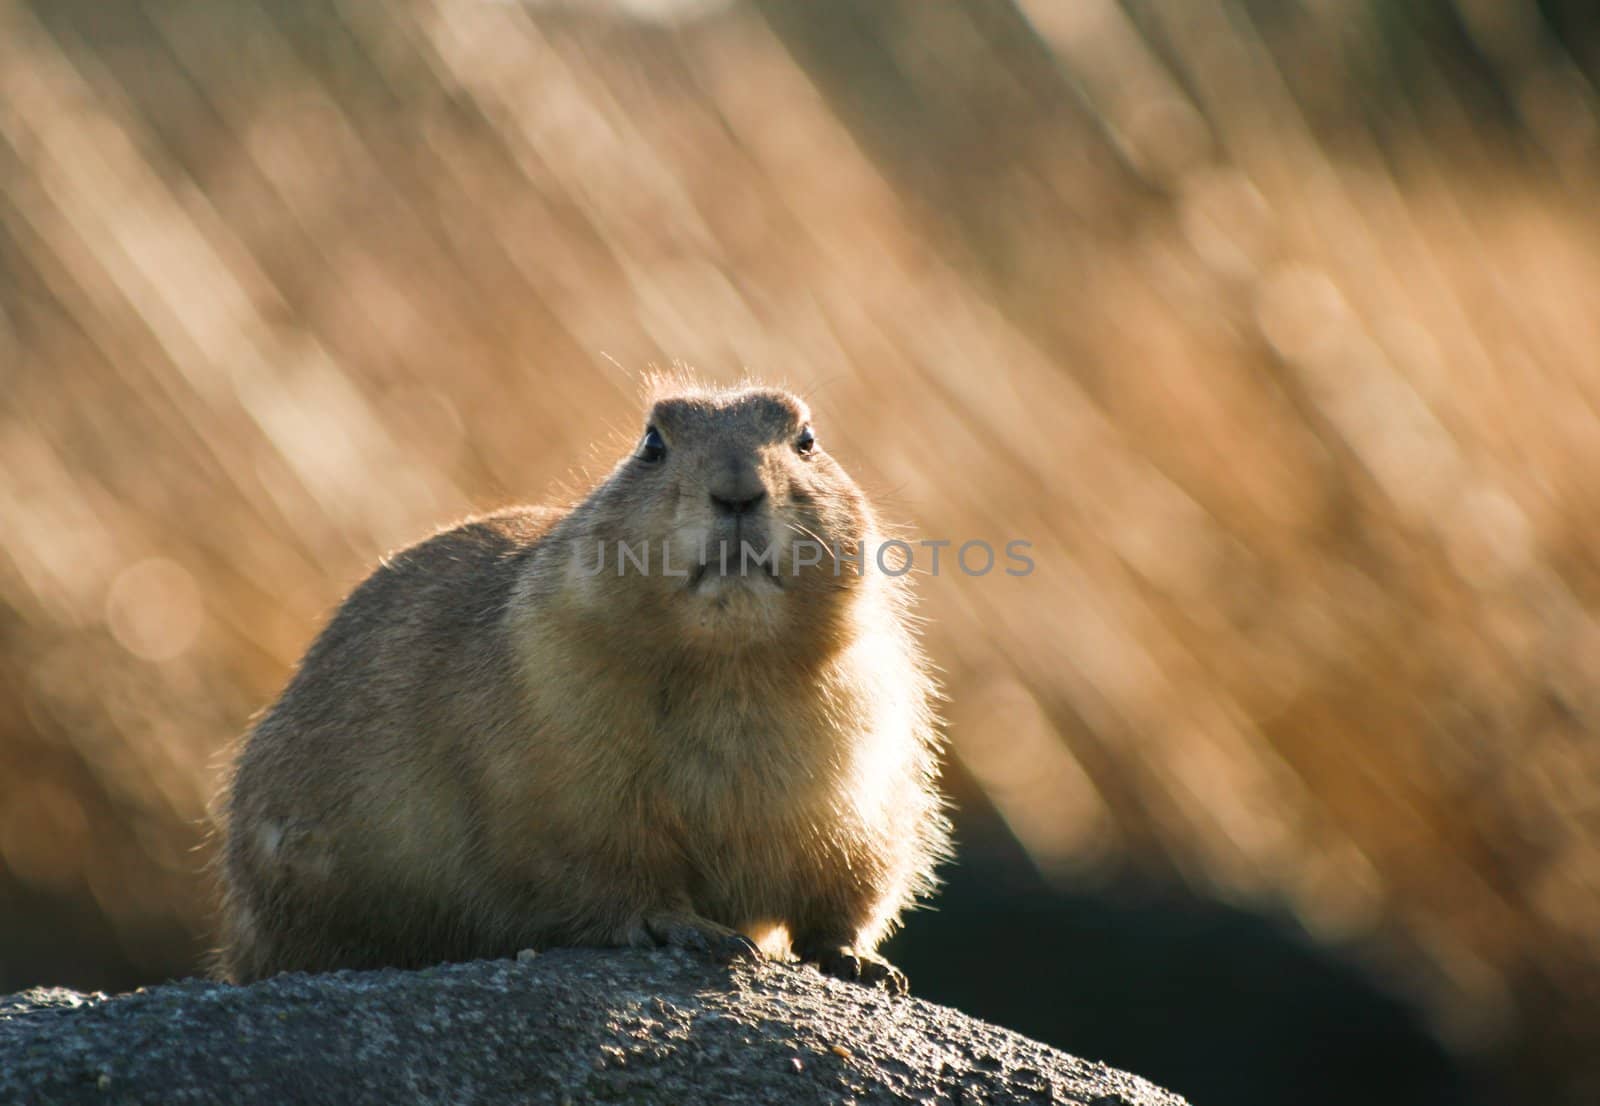 Prairiedog in the winter sun by Colette